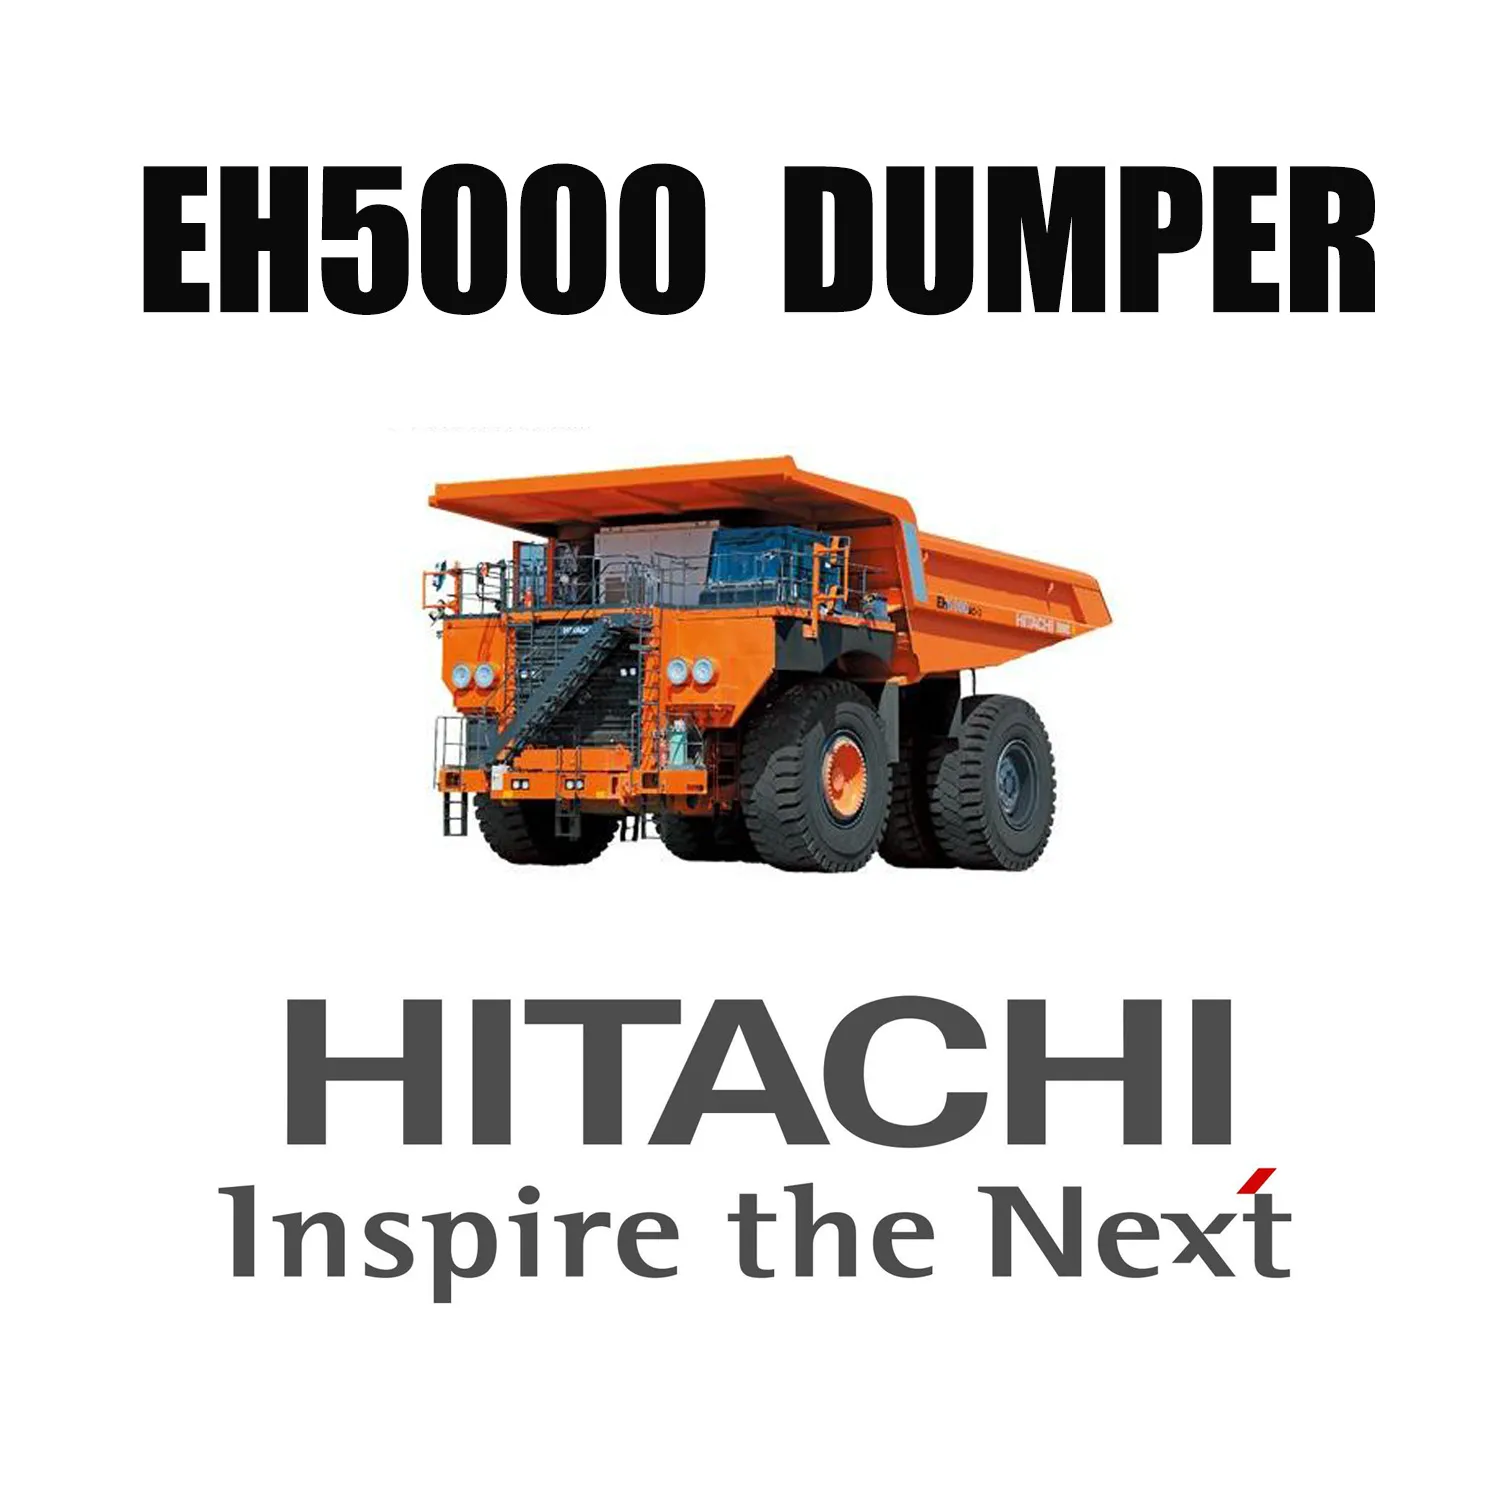 Стойкие к порезам шины OTR Compound 53/80R63 Giant Mining, установленные на HITACHI EH5000